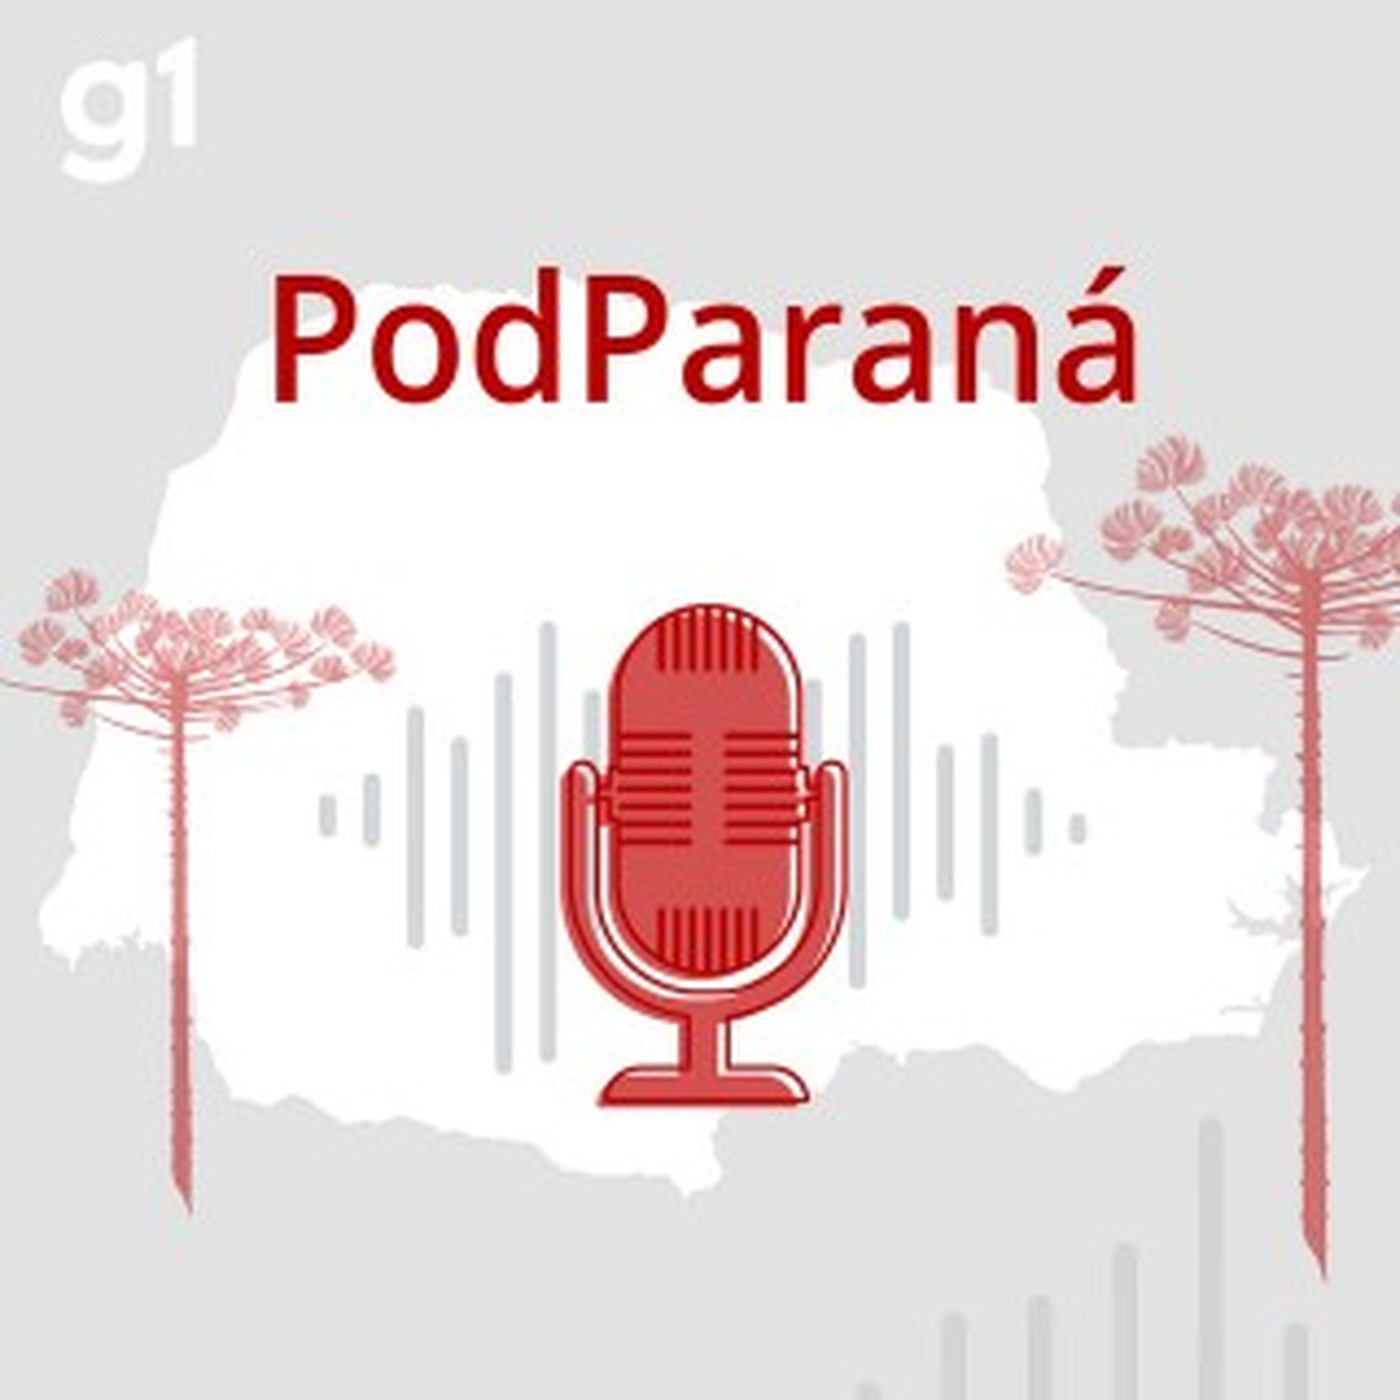 PodParaná #134: a história do Estádio do Café e a ligação com a cidade de Londrina 